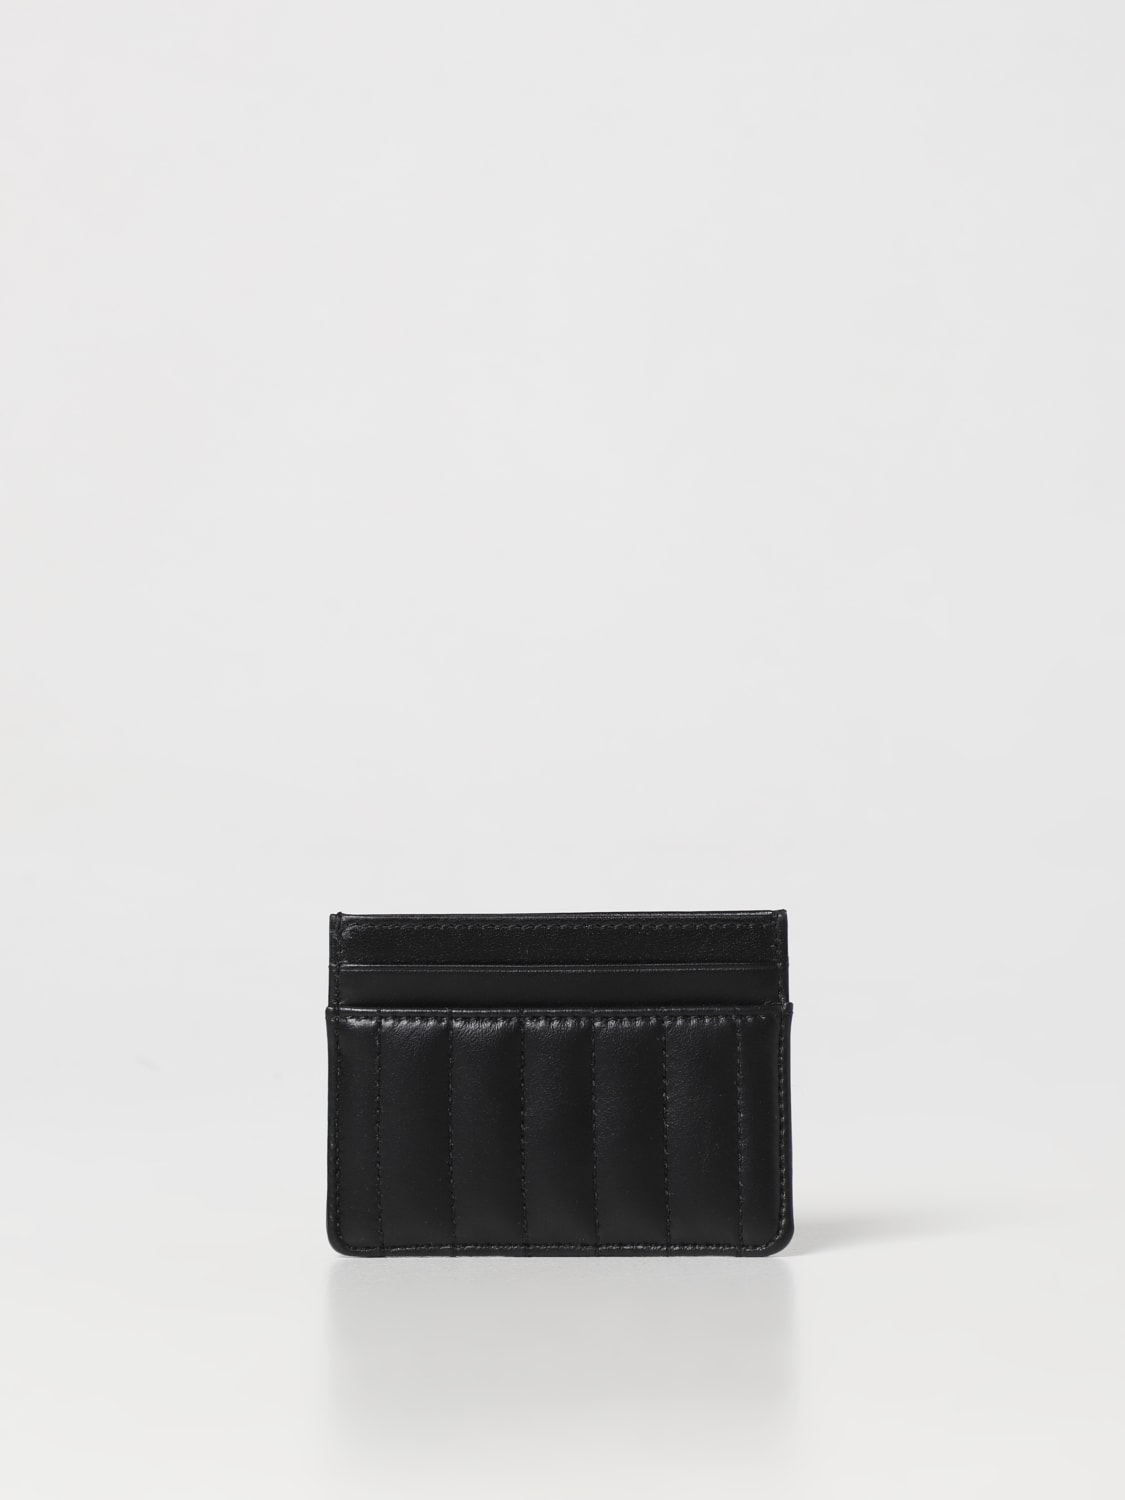 Dark Birch Burberry Wallet in Saffiano Leather